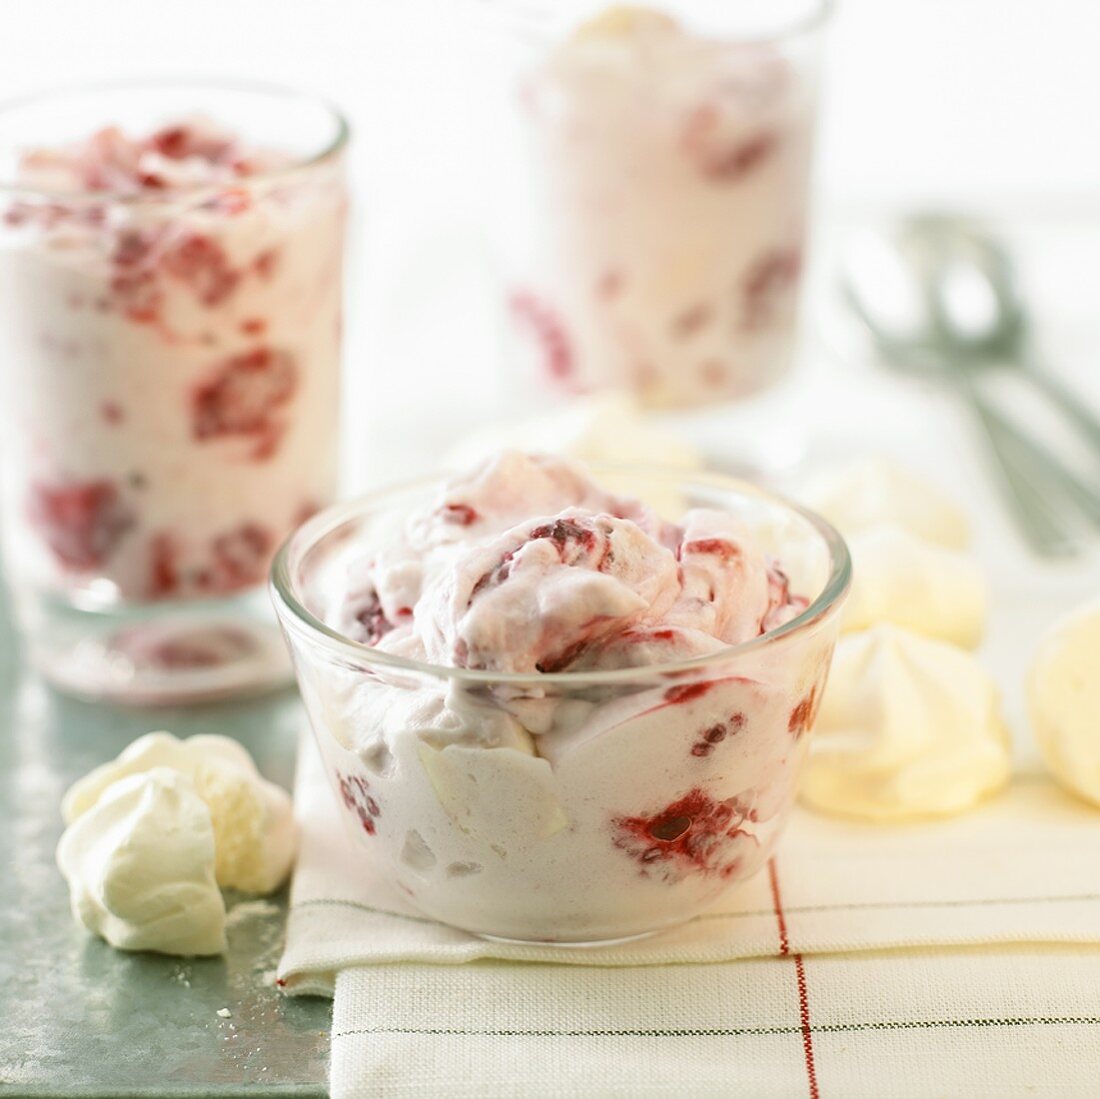 Raspberry cream with meringue